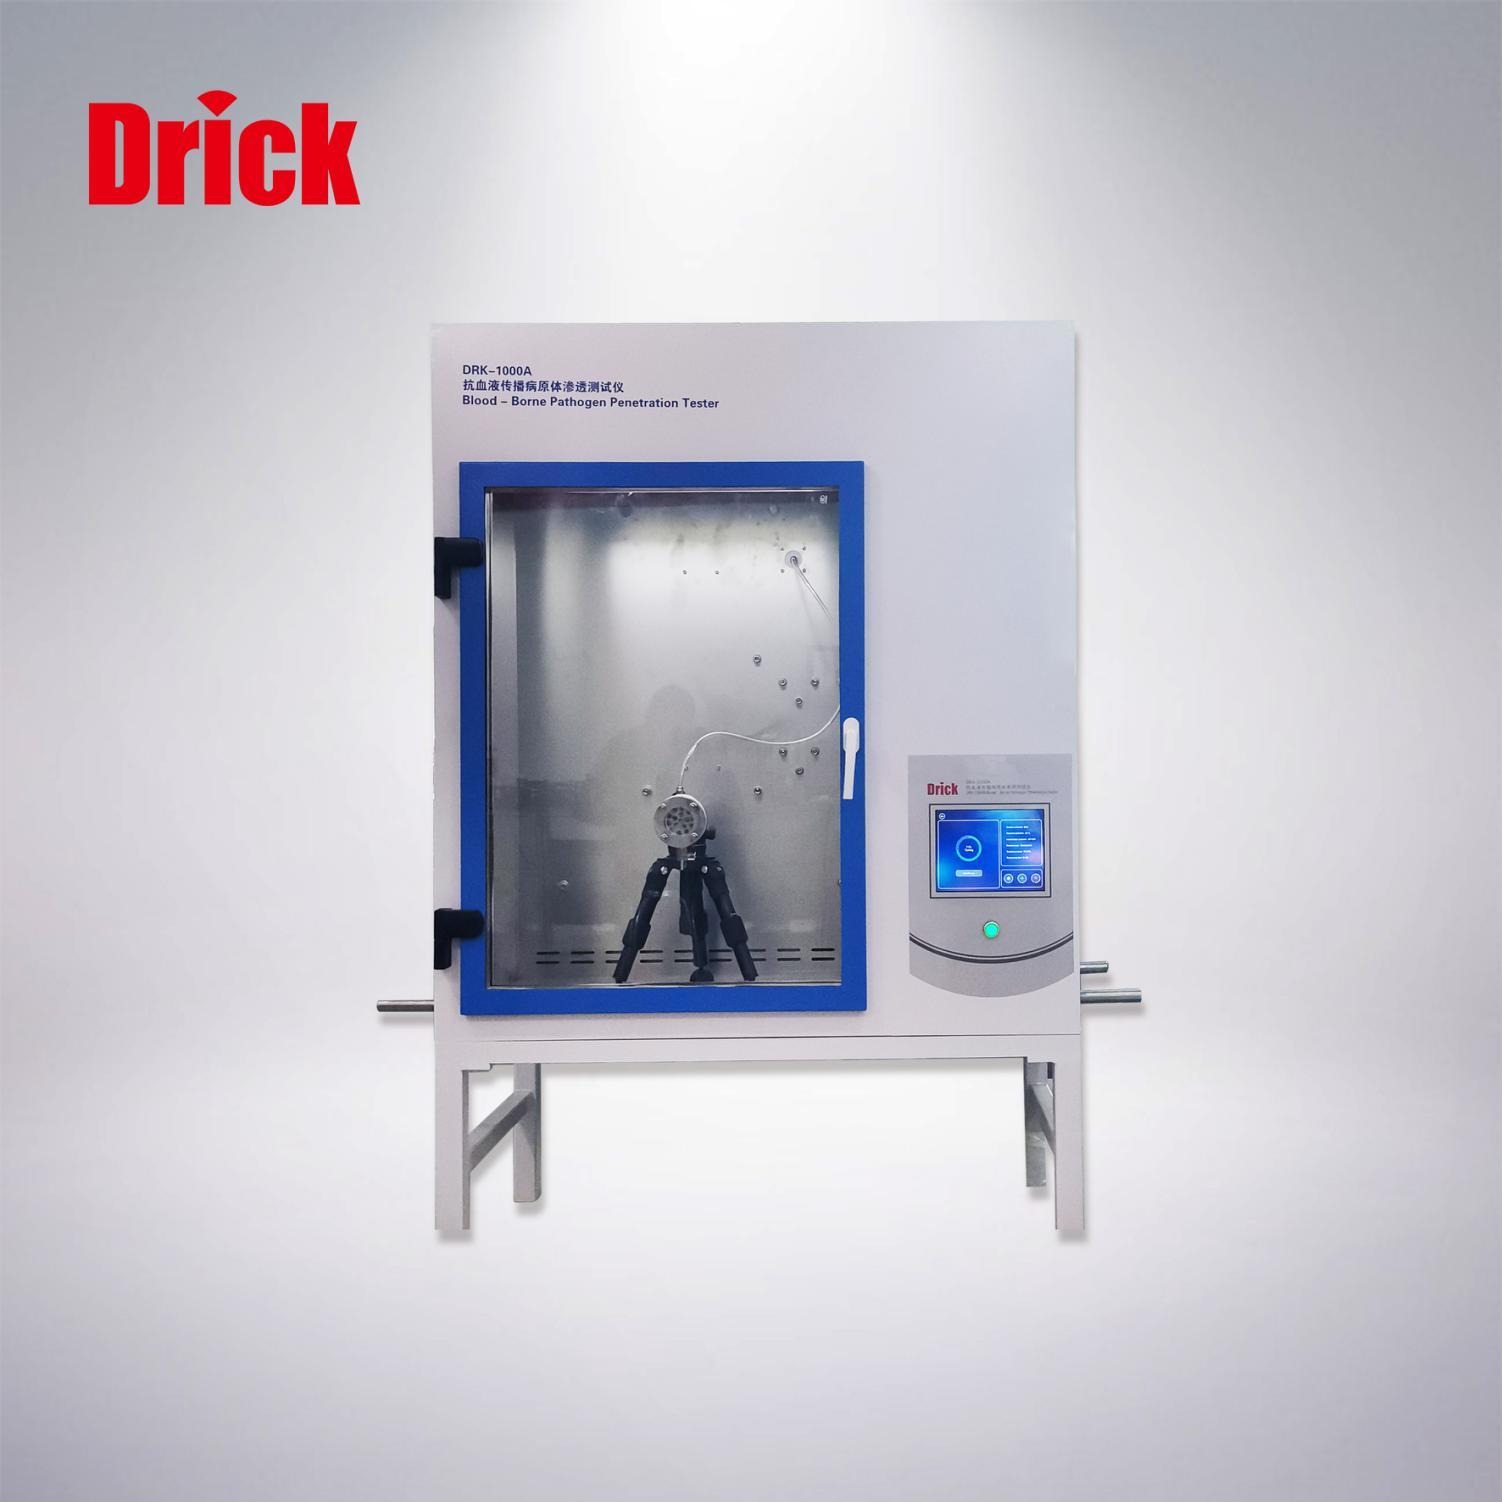 德瑞克DRK-1000A型抗血液传播病原体渗透测试仪  用来测试防护服对血液和体液、对血液病原体等的抗渗透性。图片